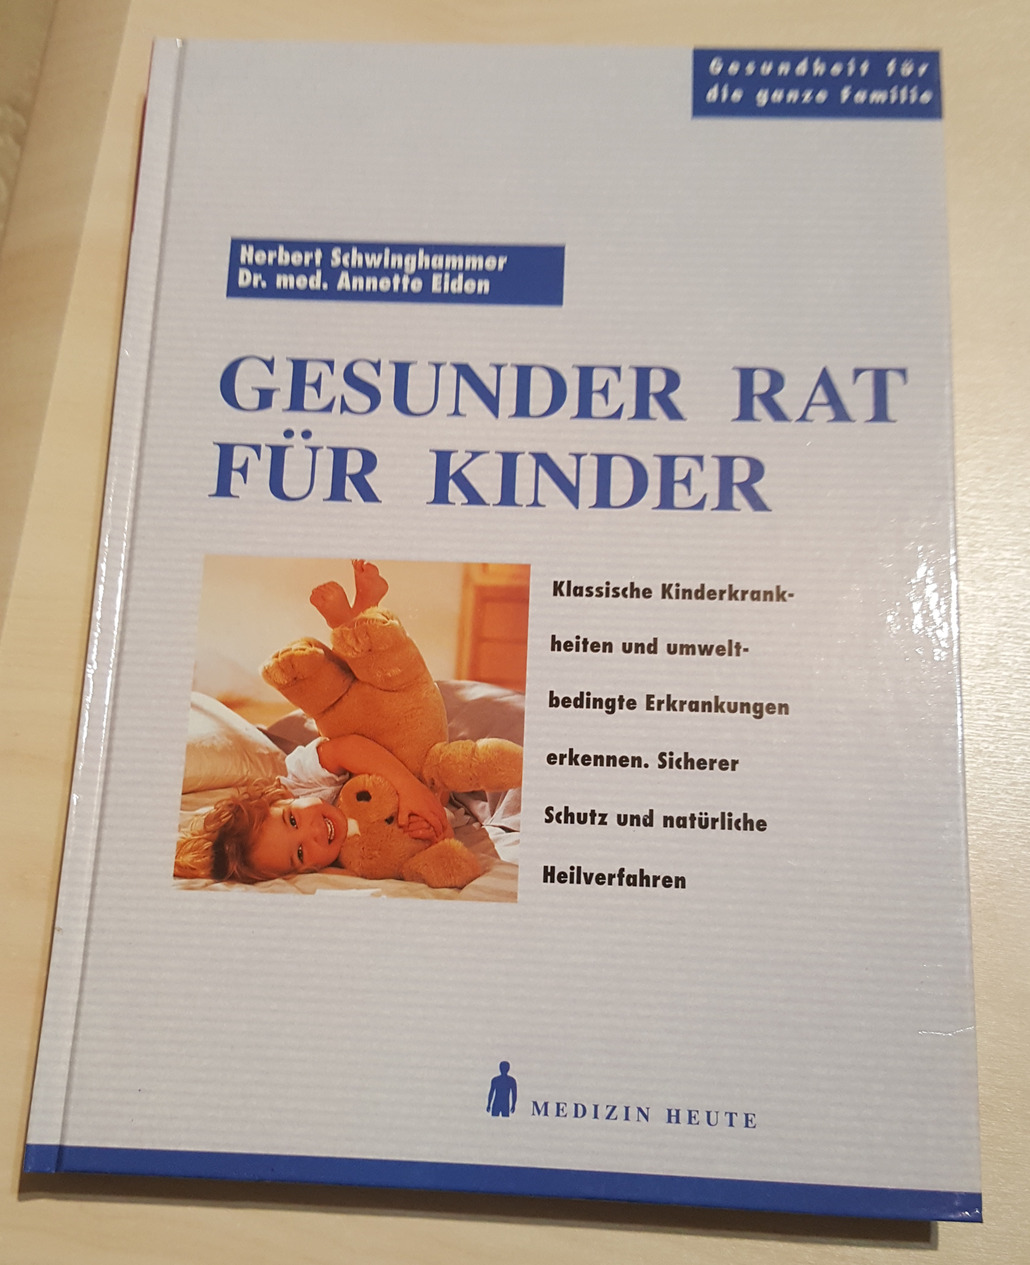 GESUNDER RAT FÜR KINDER